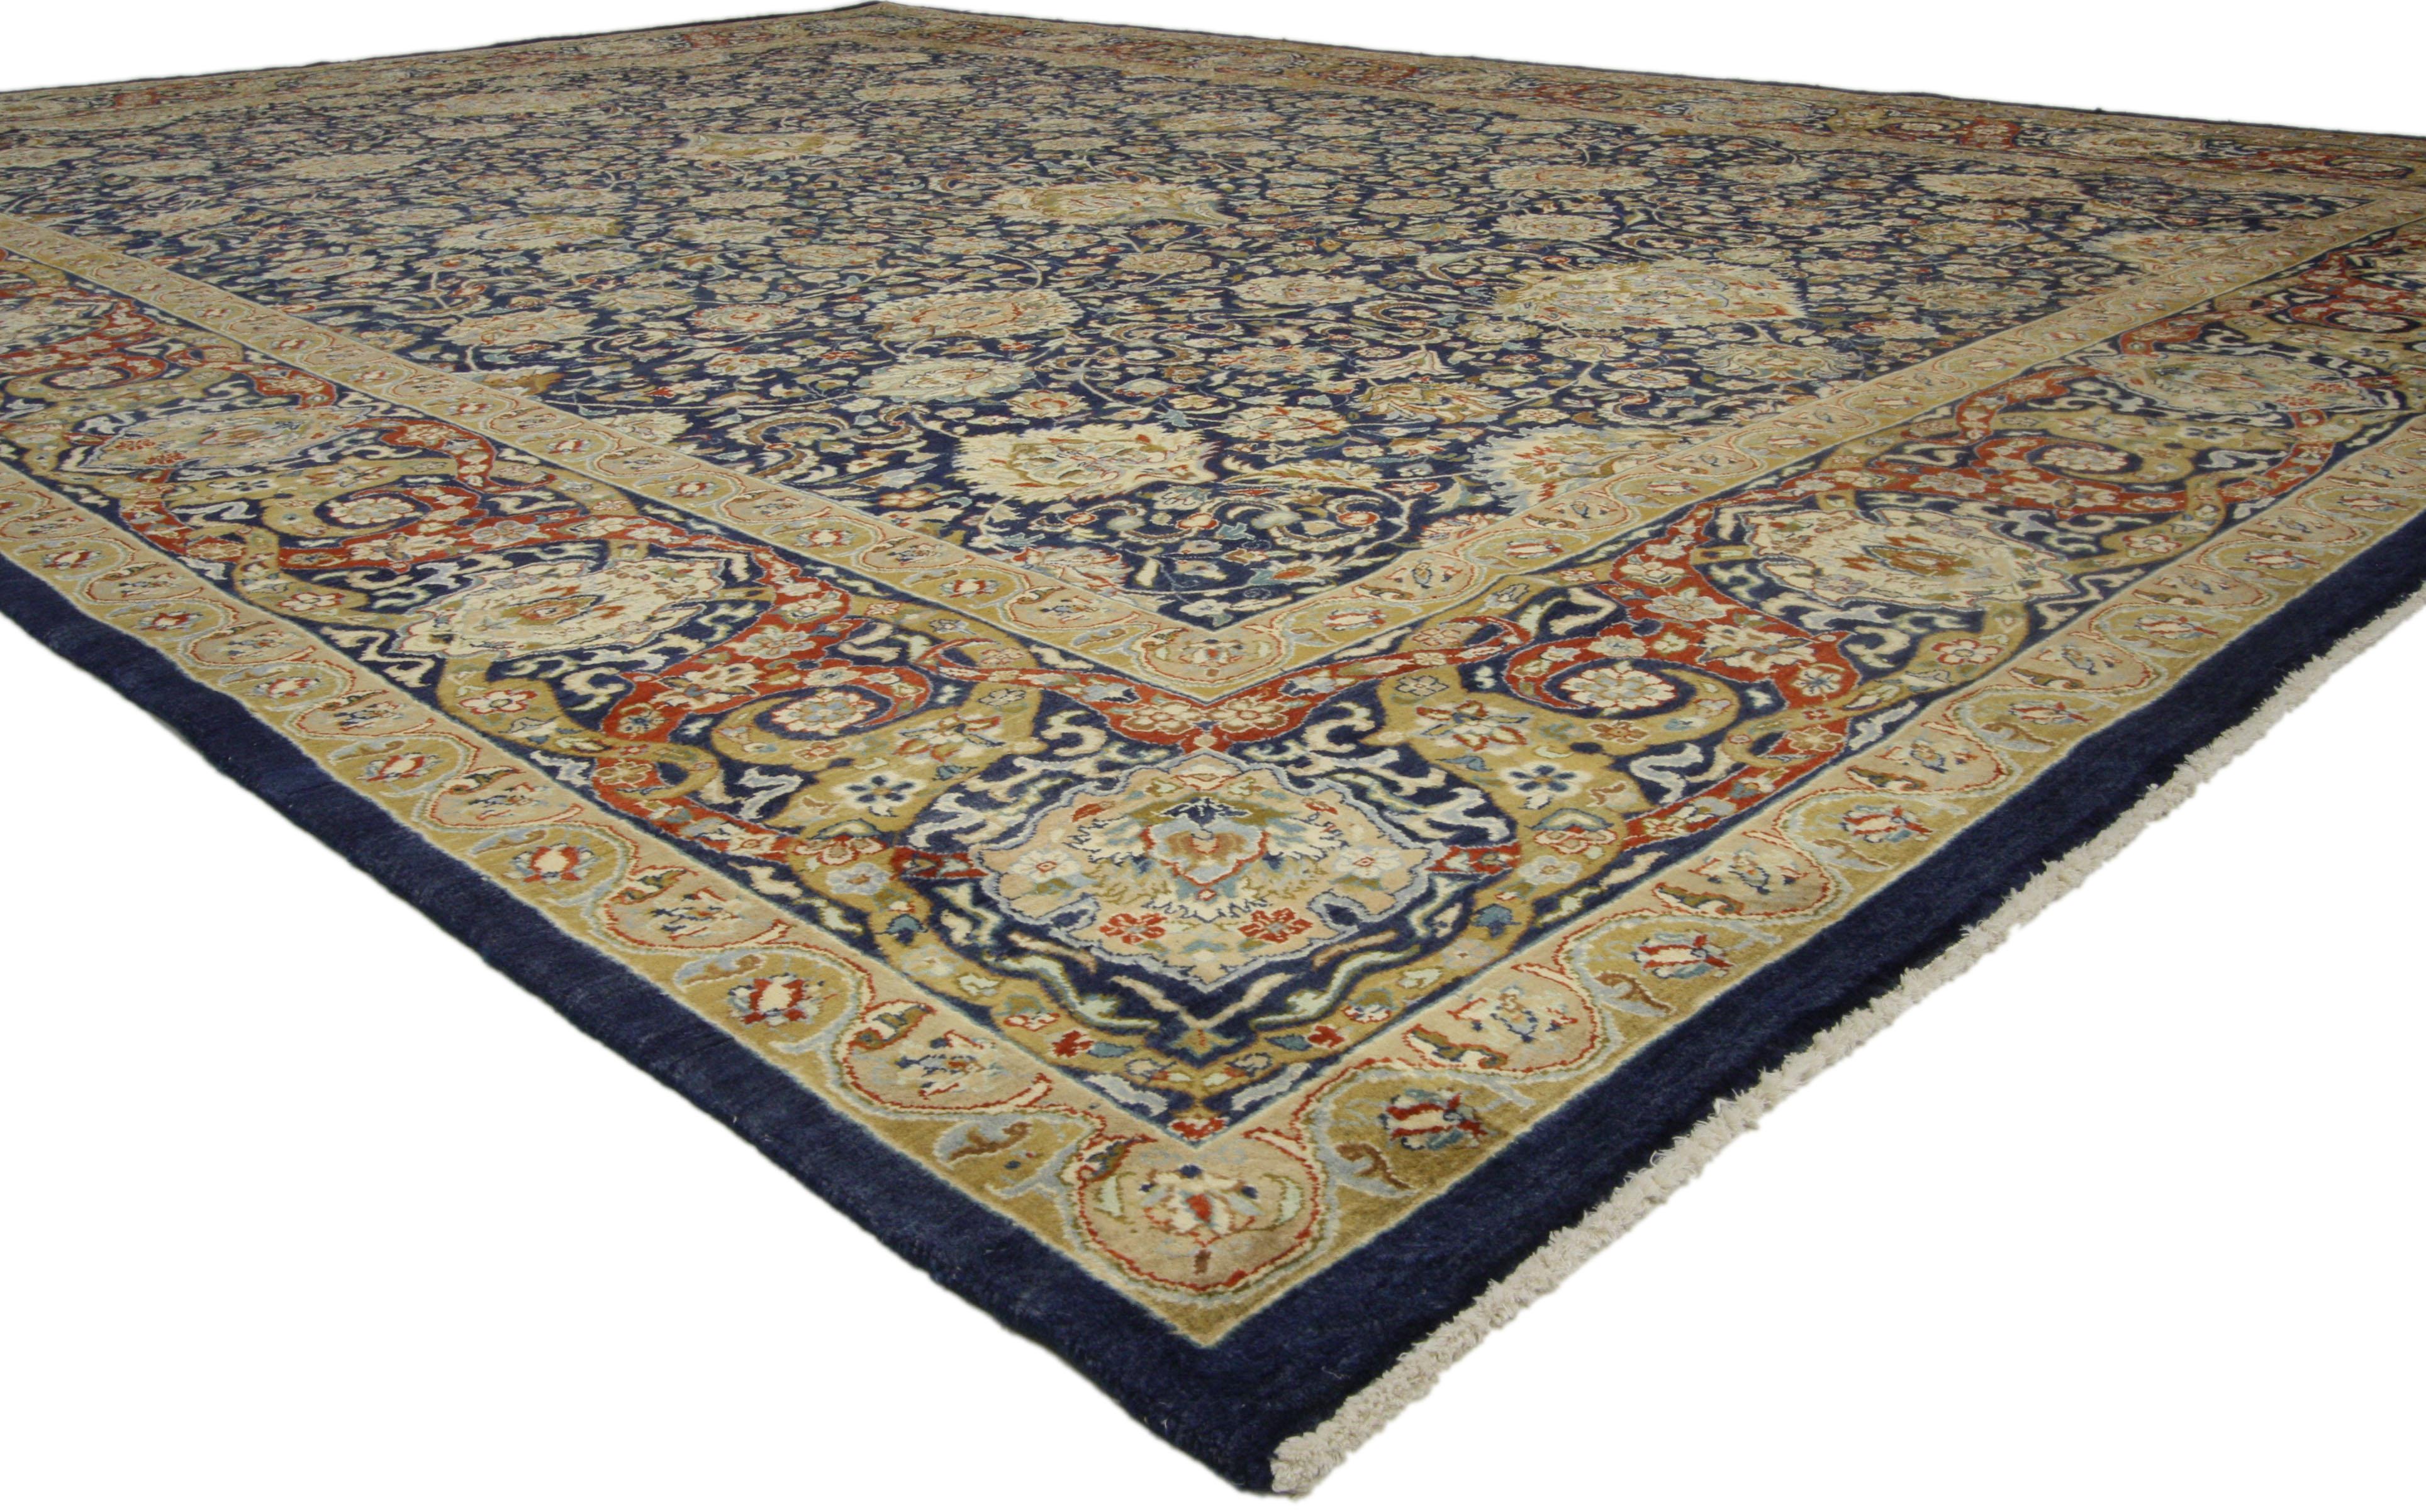 74746, tapis pakistanais de style Renaissance médiévale. Avec ses détails ornementaux qui ajoutent une élégance intemporelle et un sens de l'histoire, ce tapis pakistanais vintage en laine nouée à la main présente un motif floral raffiné composé de